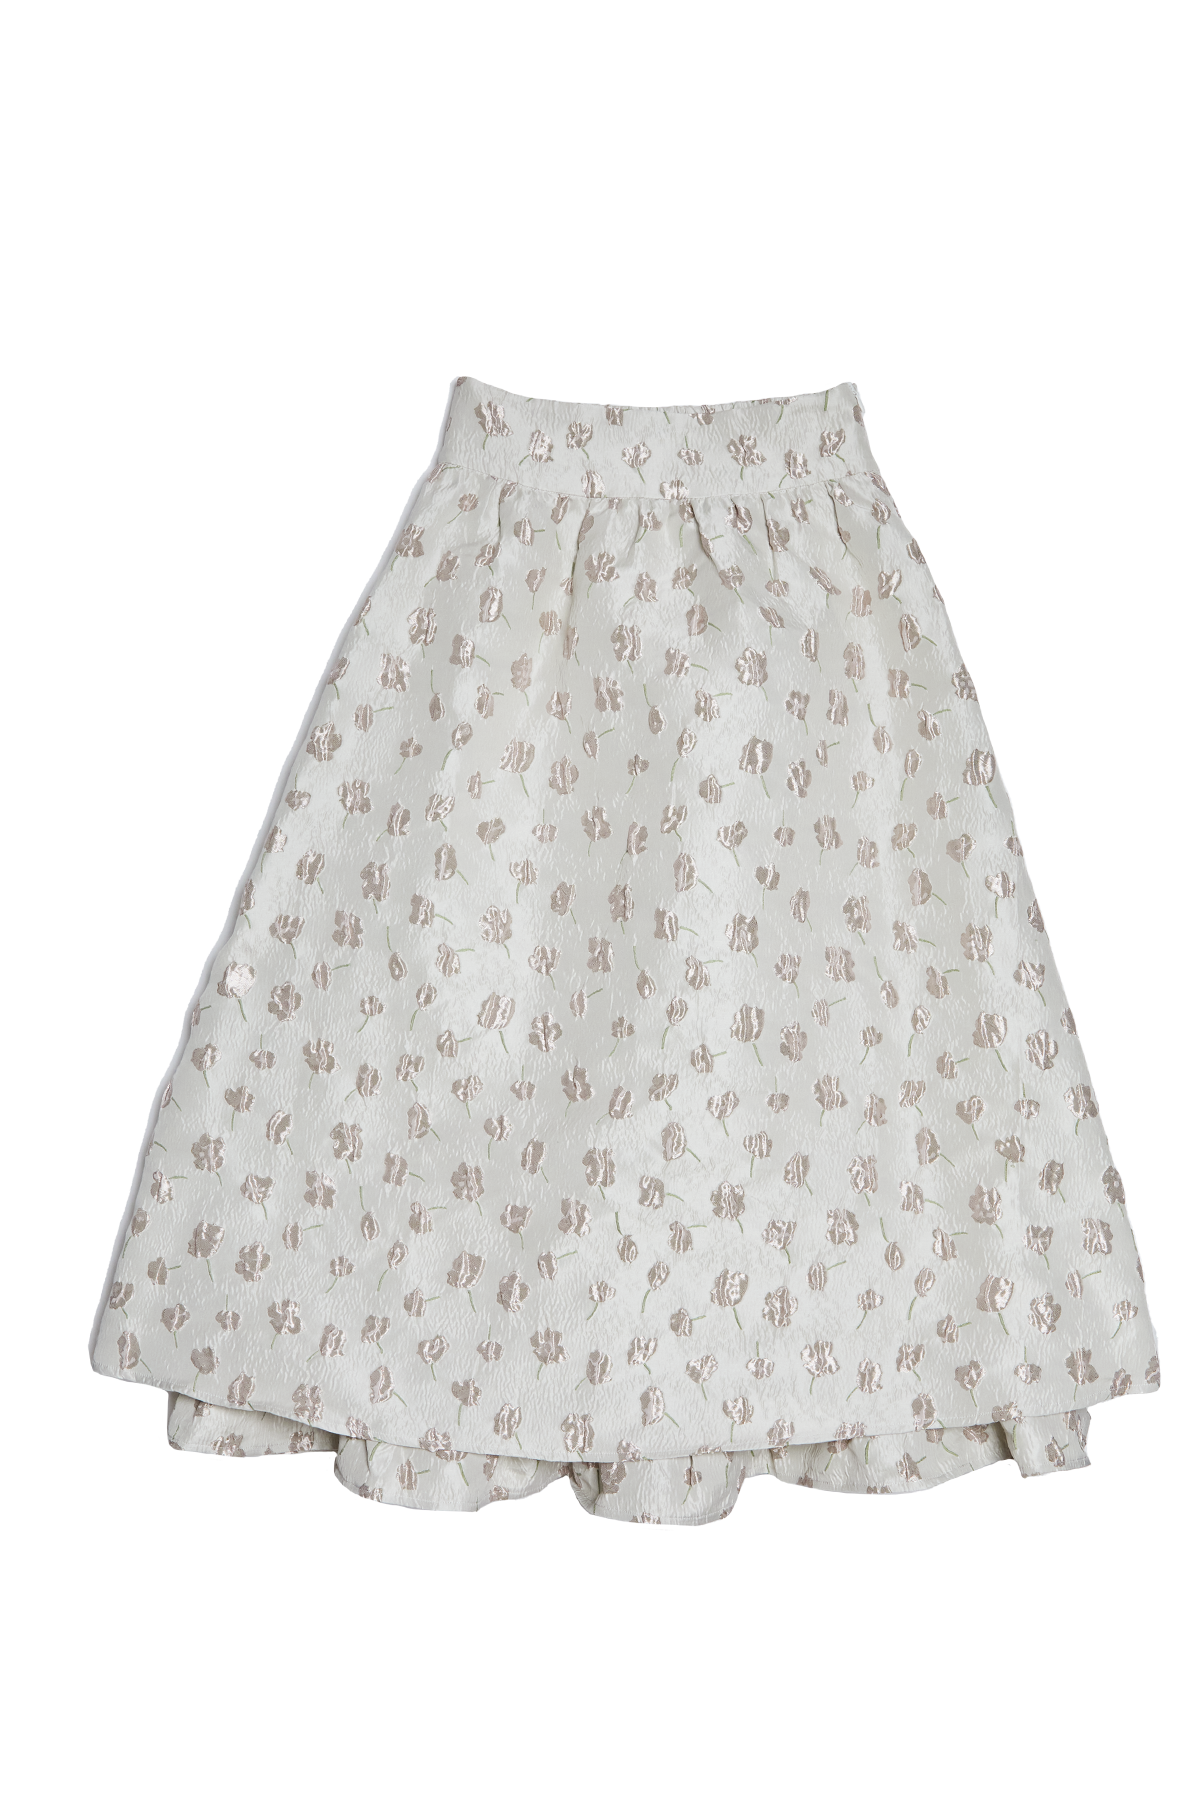 Birthday Glitter Bouquet Skirt / White